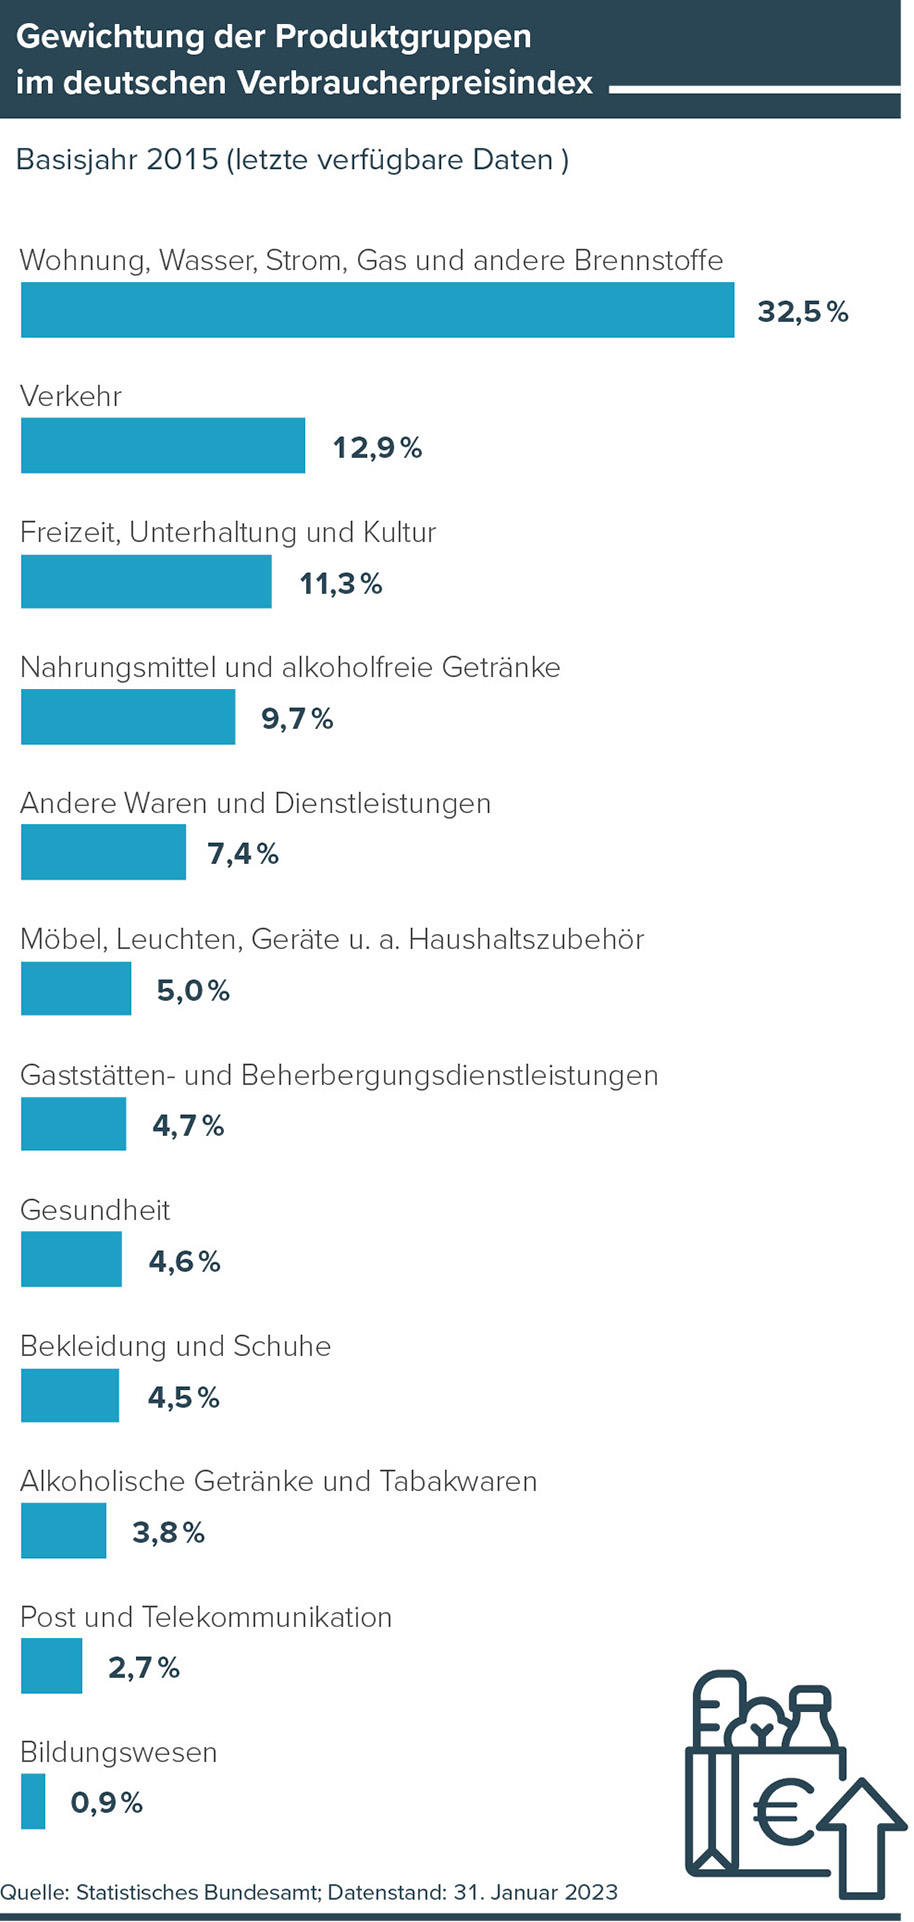 Grafik Gewichtung der Produktgruppen im deutschen Verbraucherpreisindex